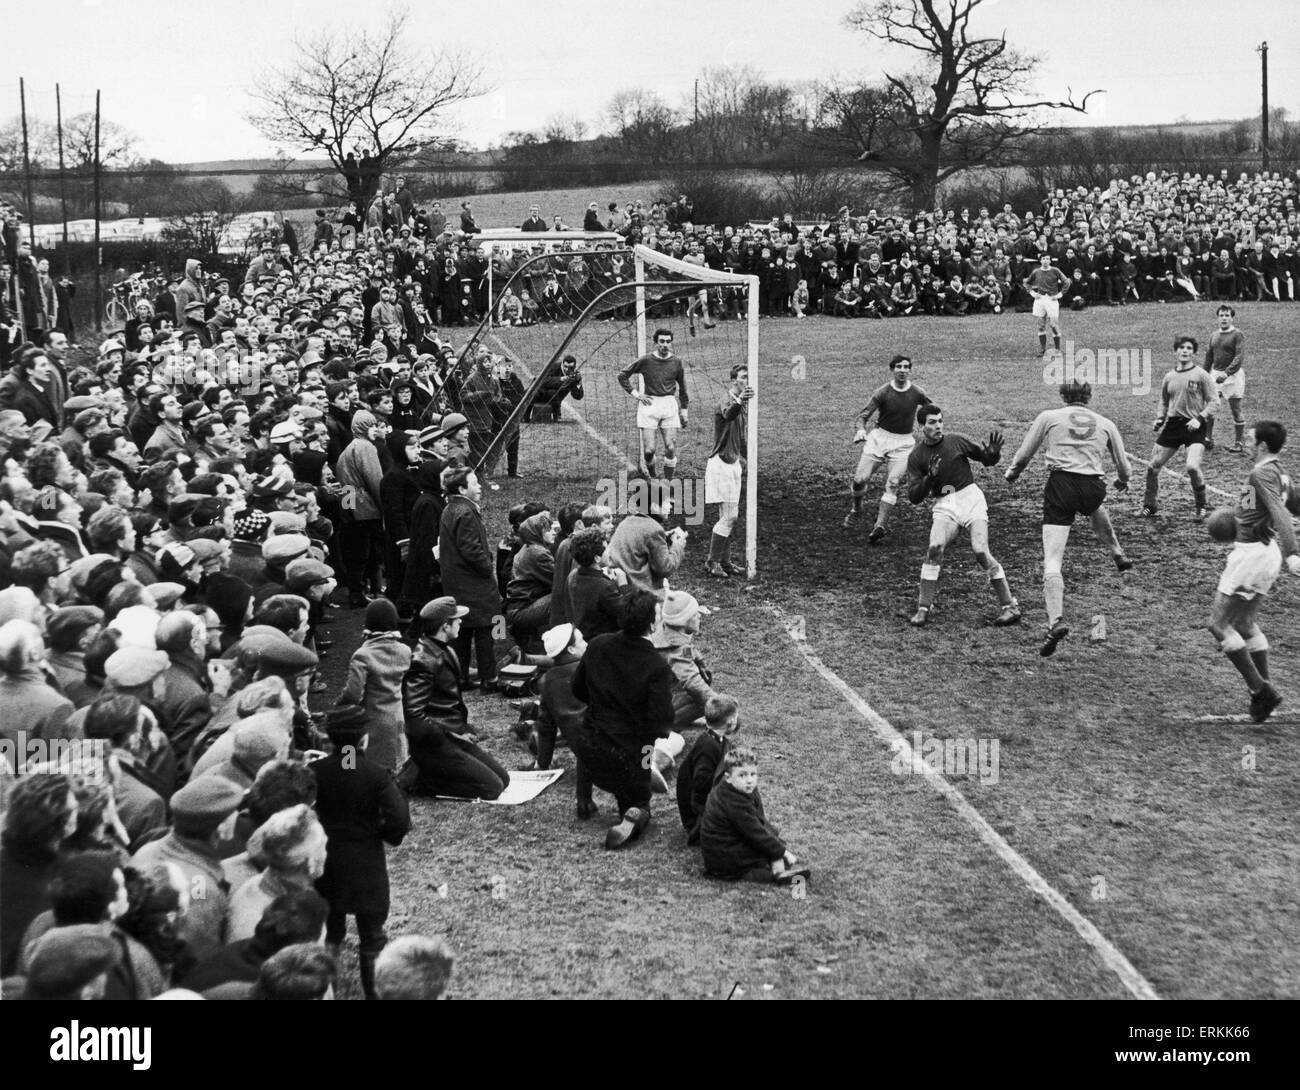 Les étapes finales de la FA Cup troisième match amateur entre Alvechurch et Wealdstone à Lye pré. Alvechurch a gagné 4-1. 15 février 1965. Banque D'Images